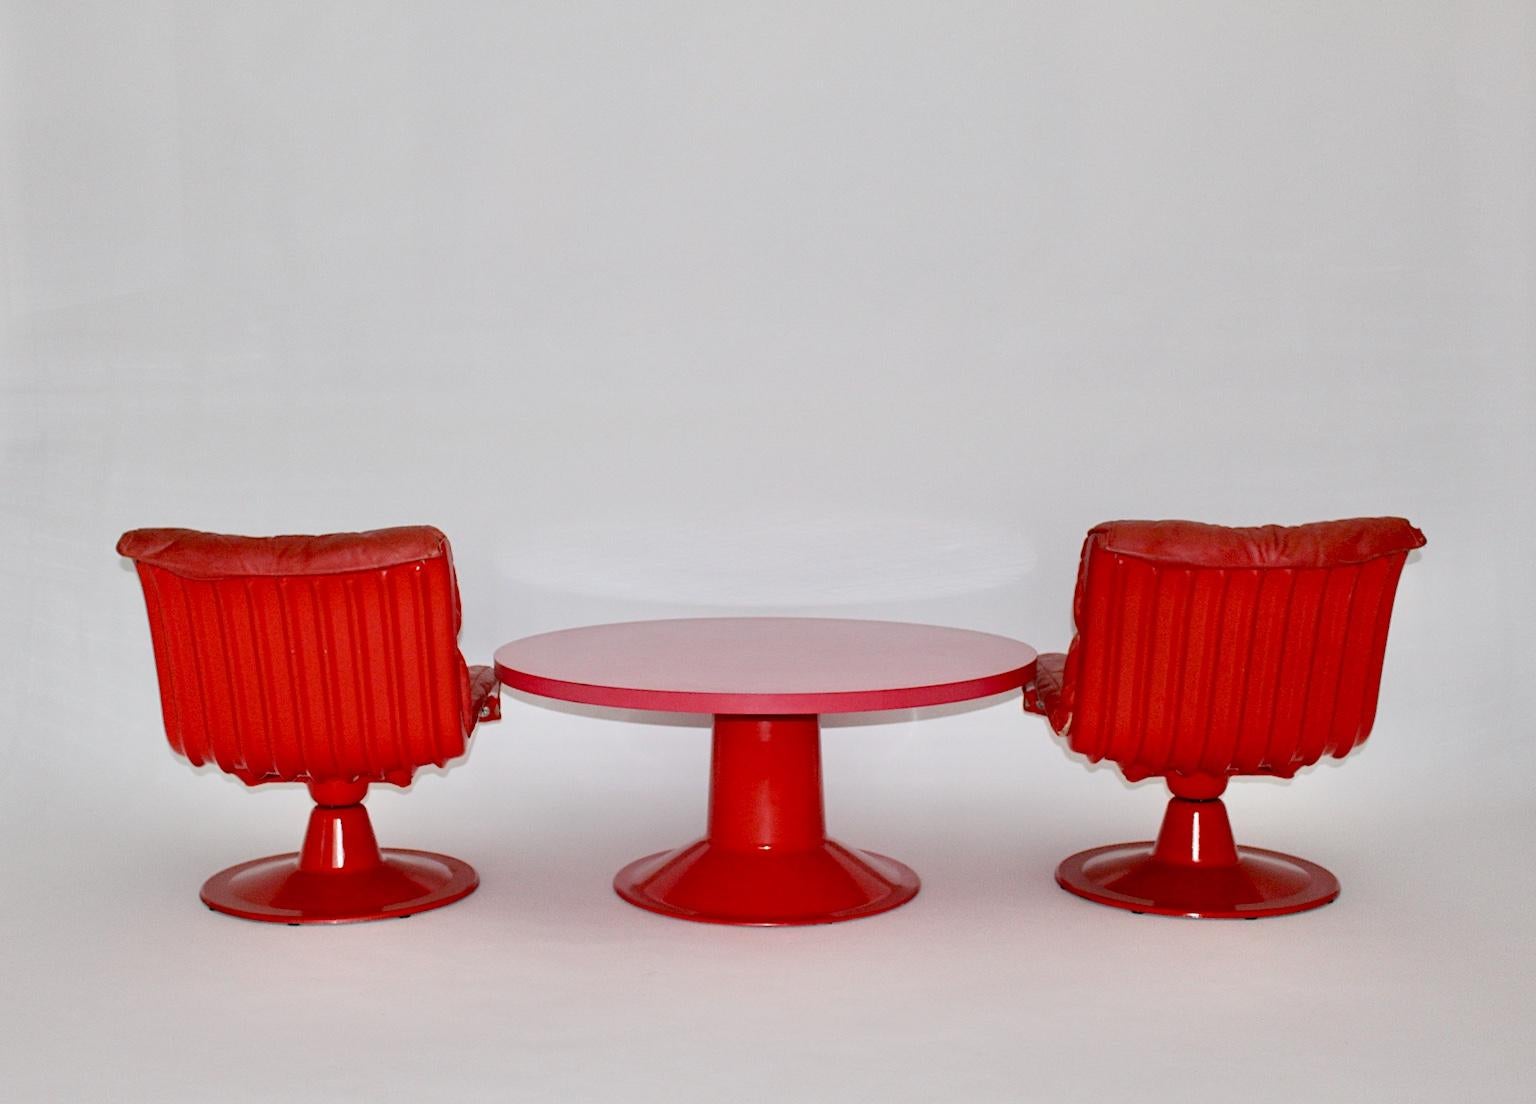 Paire de chaises de salon vintage rouge Space Age nommées Saturn, qui ont été conçues par Yjrö Kukkapne Finlande 1960 avec une table de canapé ronde rouge rose également conçue par Yrjö Kukkapuro, 1960.
Les rares chaises de salon pivotantes et